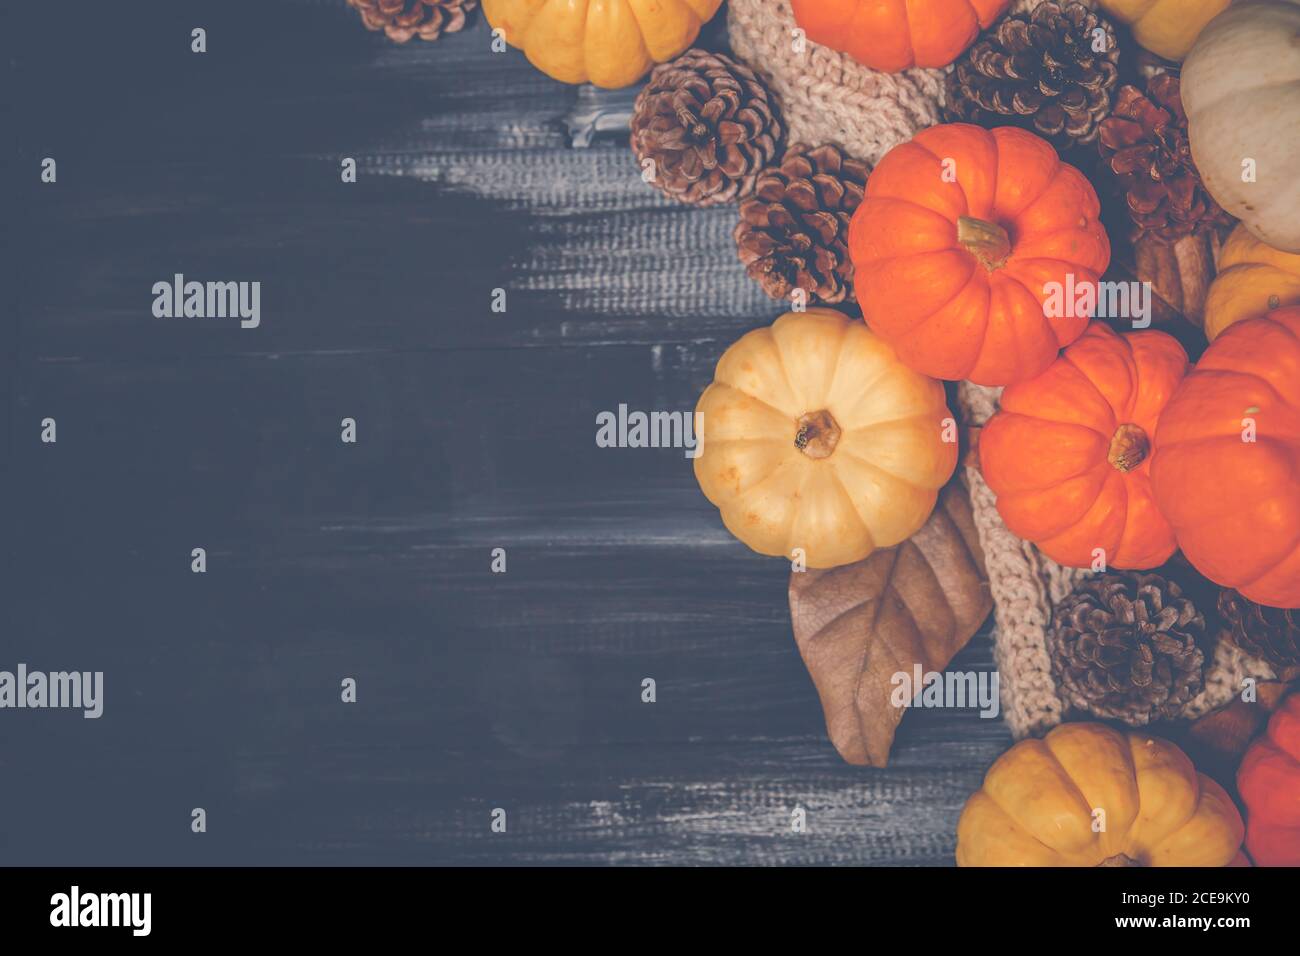 Draufsicht auf Halloween und Thanksgiving Tag, oranger Kürbis, gelber Kürbis, weißer Kürbis, Strickpullover und Pinecone auf dunklem Hintergrund mit c Stockfoto